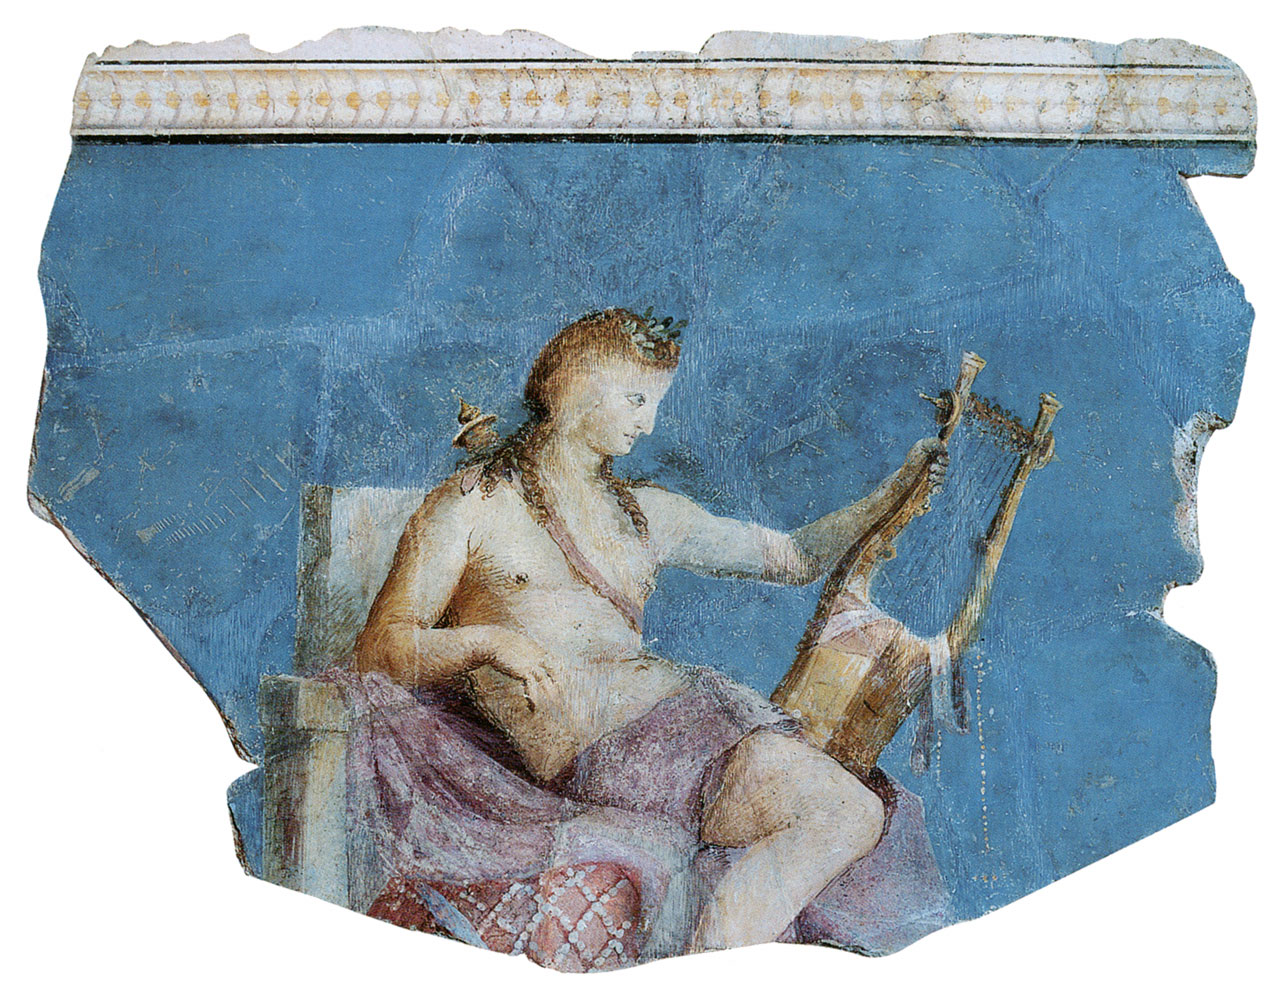 Ο «κιθαρωδός» Απόλλωνας. Nωπογραφία στον, Οίκο του Αυγούστου στην Ρώμη, περ. 20 π.Χ.